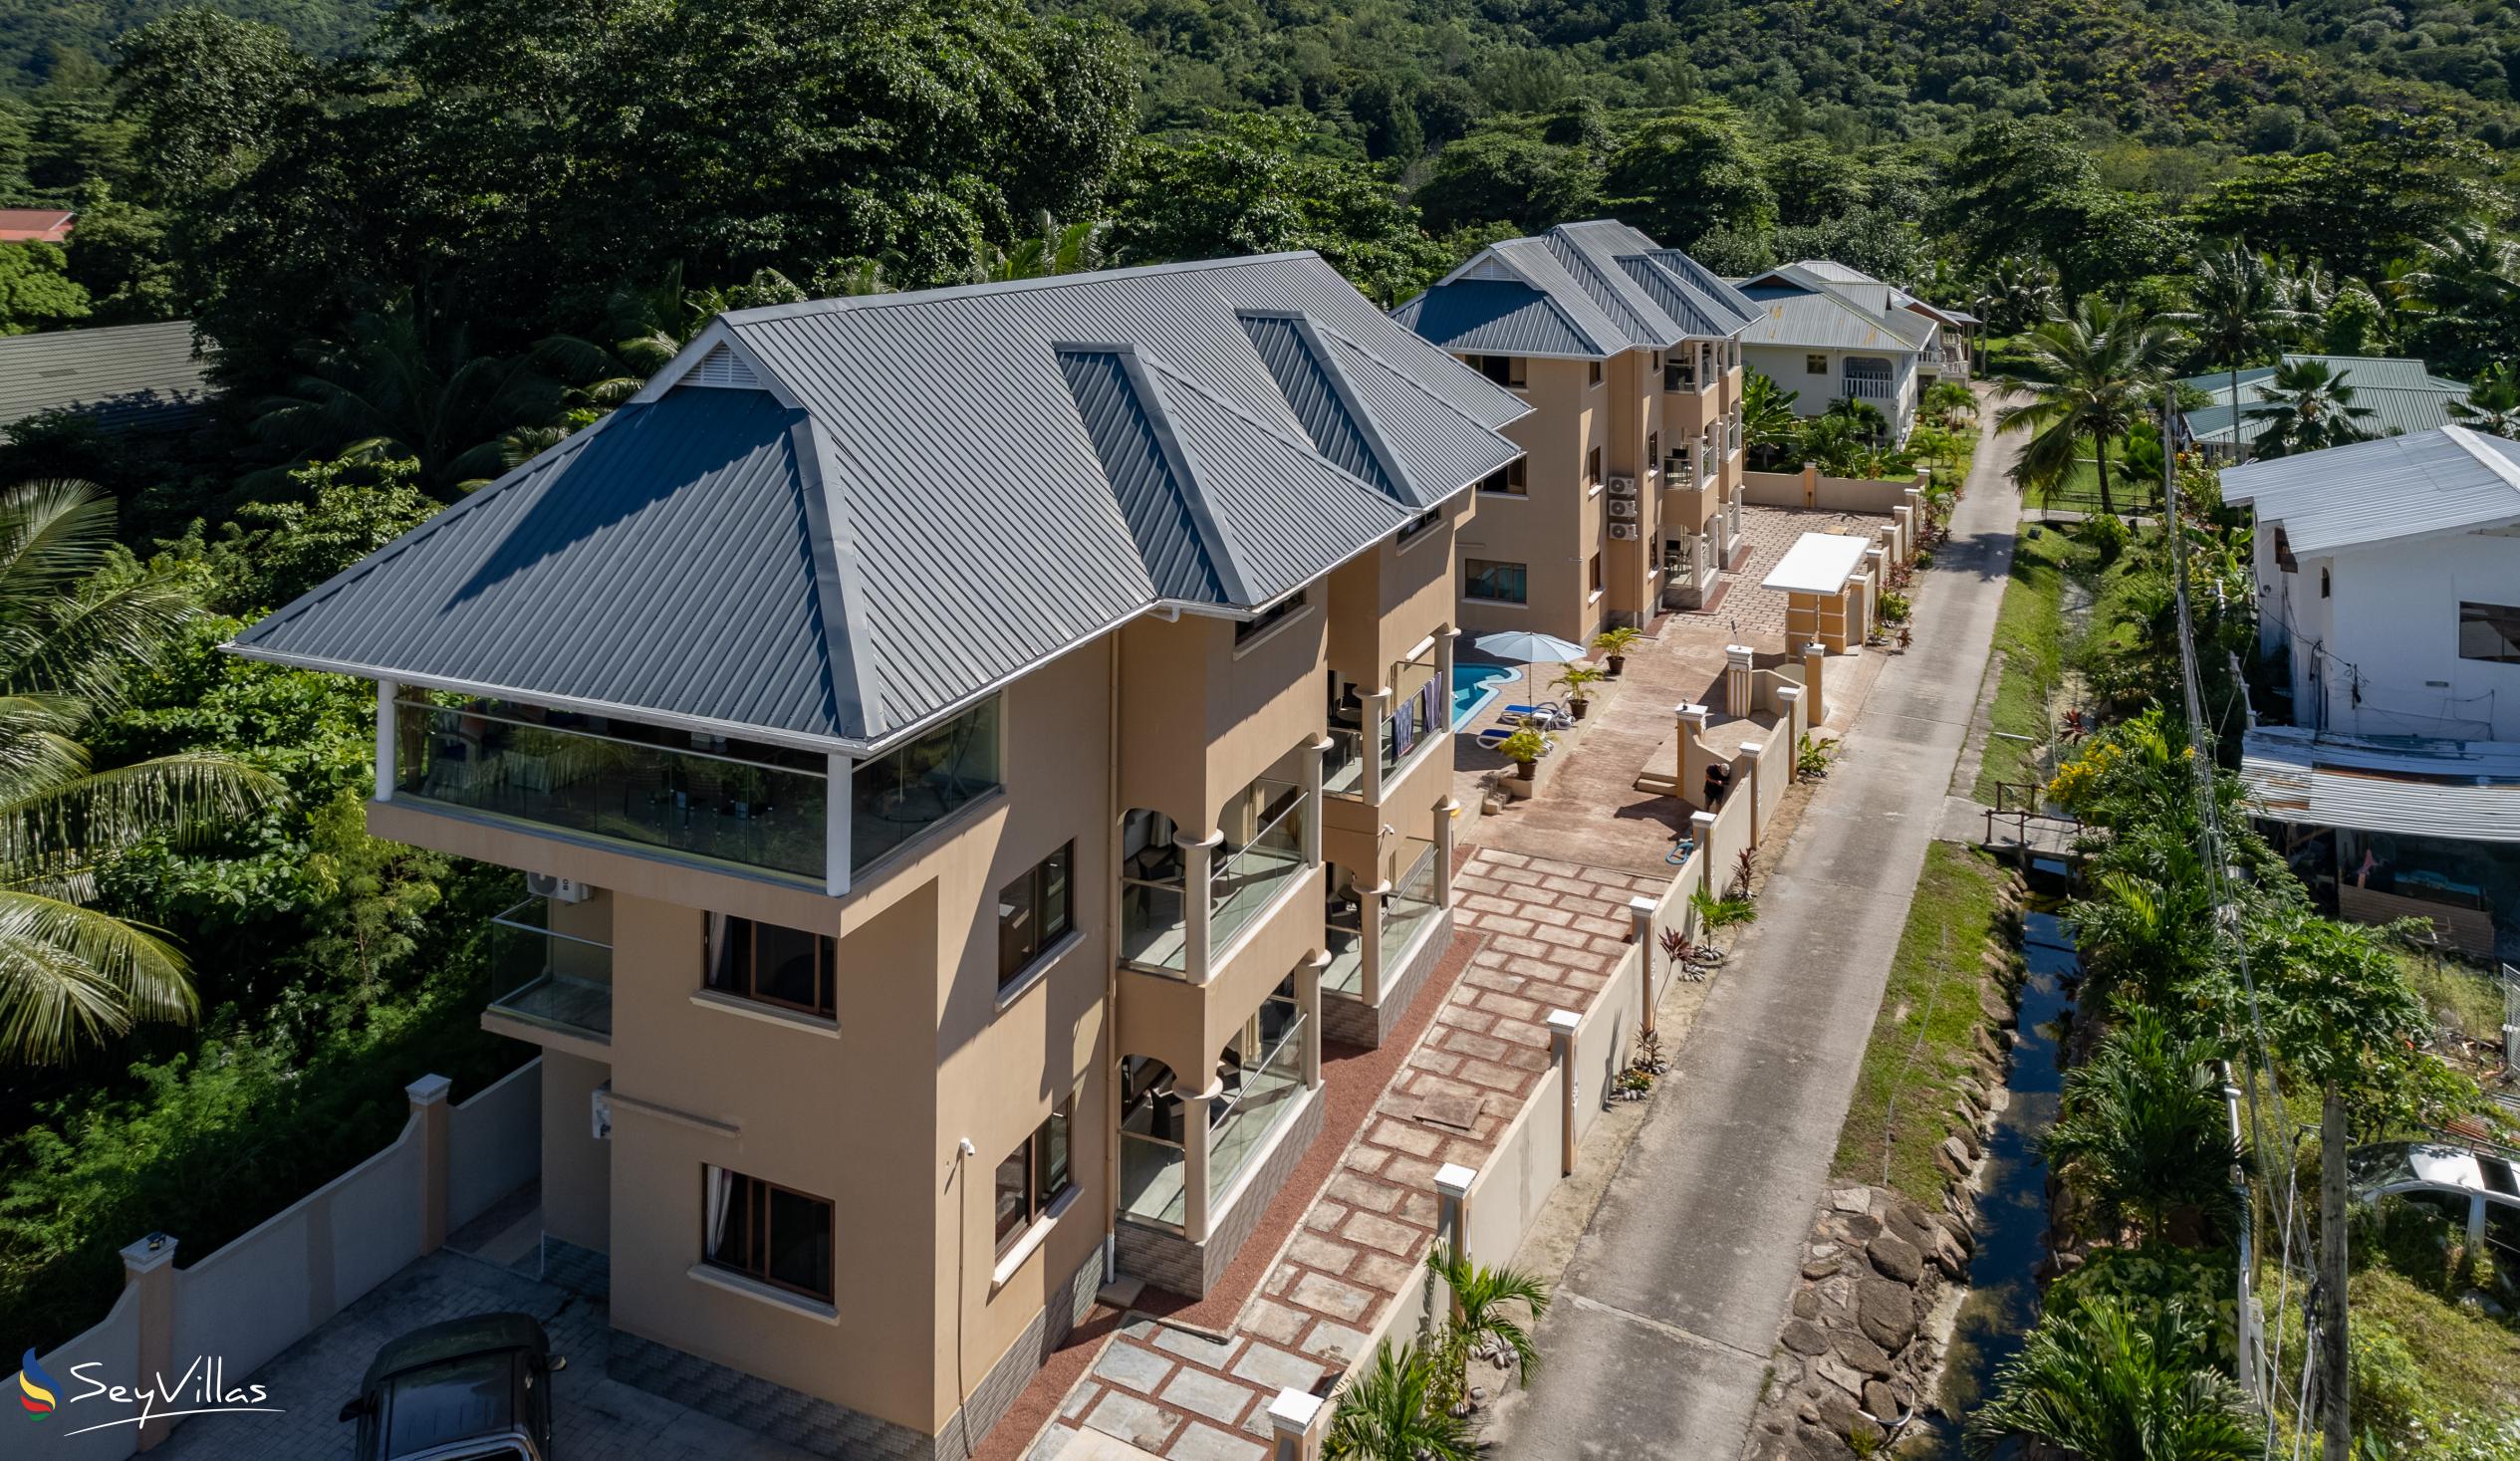 Foto 17: Stone Self Catering Apartments - Aussenbereich - Praslin (Seychellen)